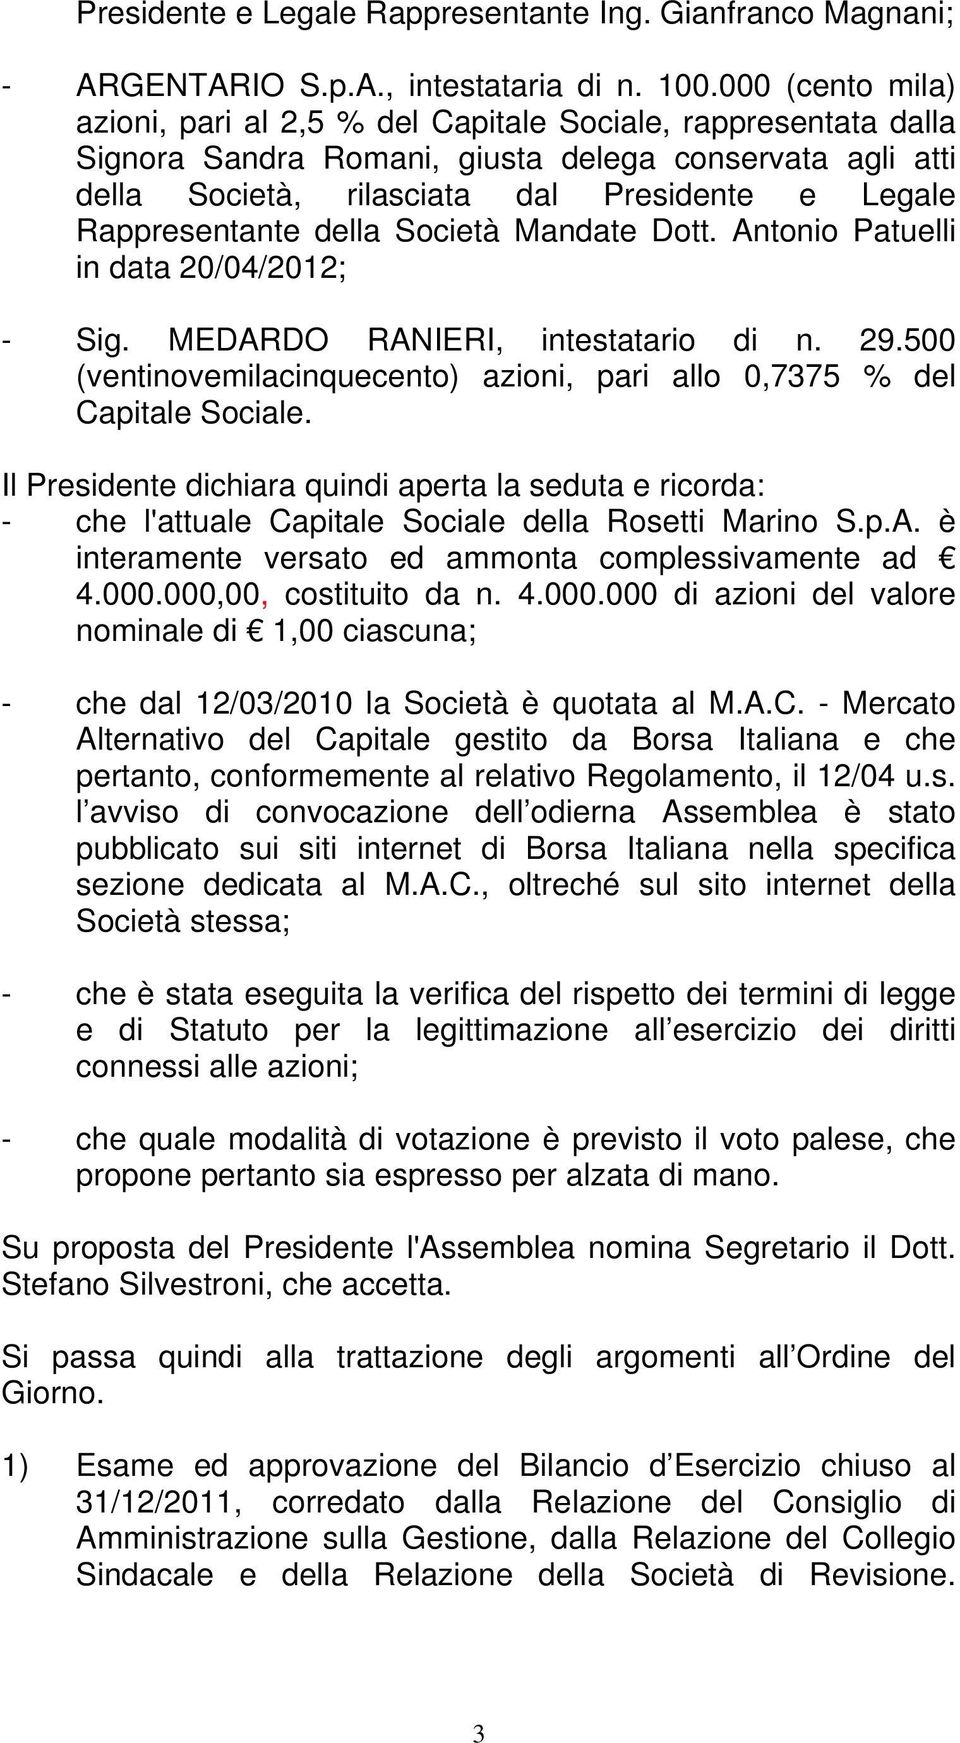 Rappresentante della Società Mandate Dott. Antonio Patuelli in data 20/04/2012; - Sig. MEDARDO RANIERI, intestatario di n. 29.